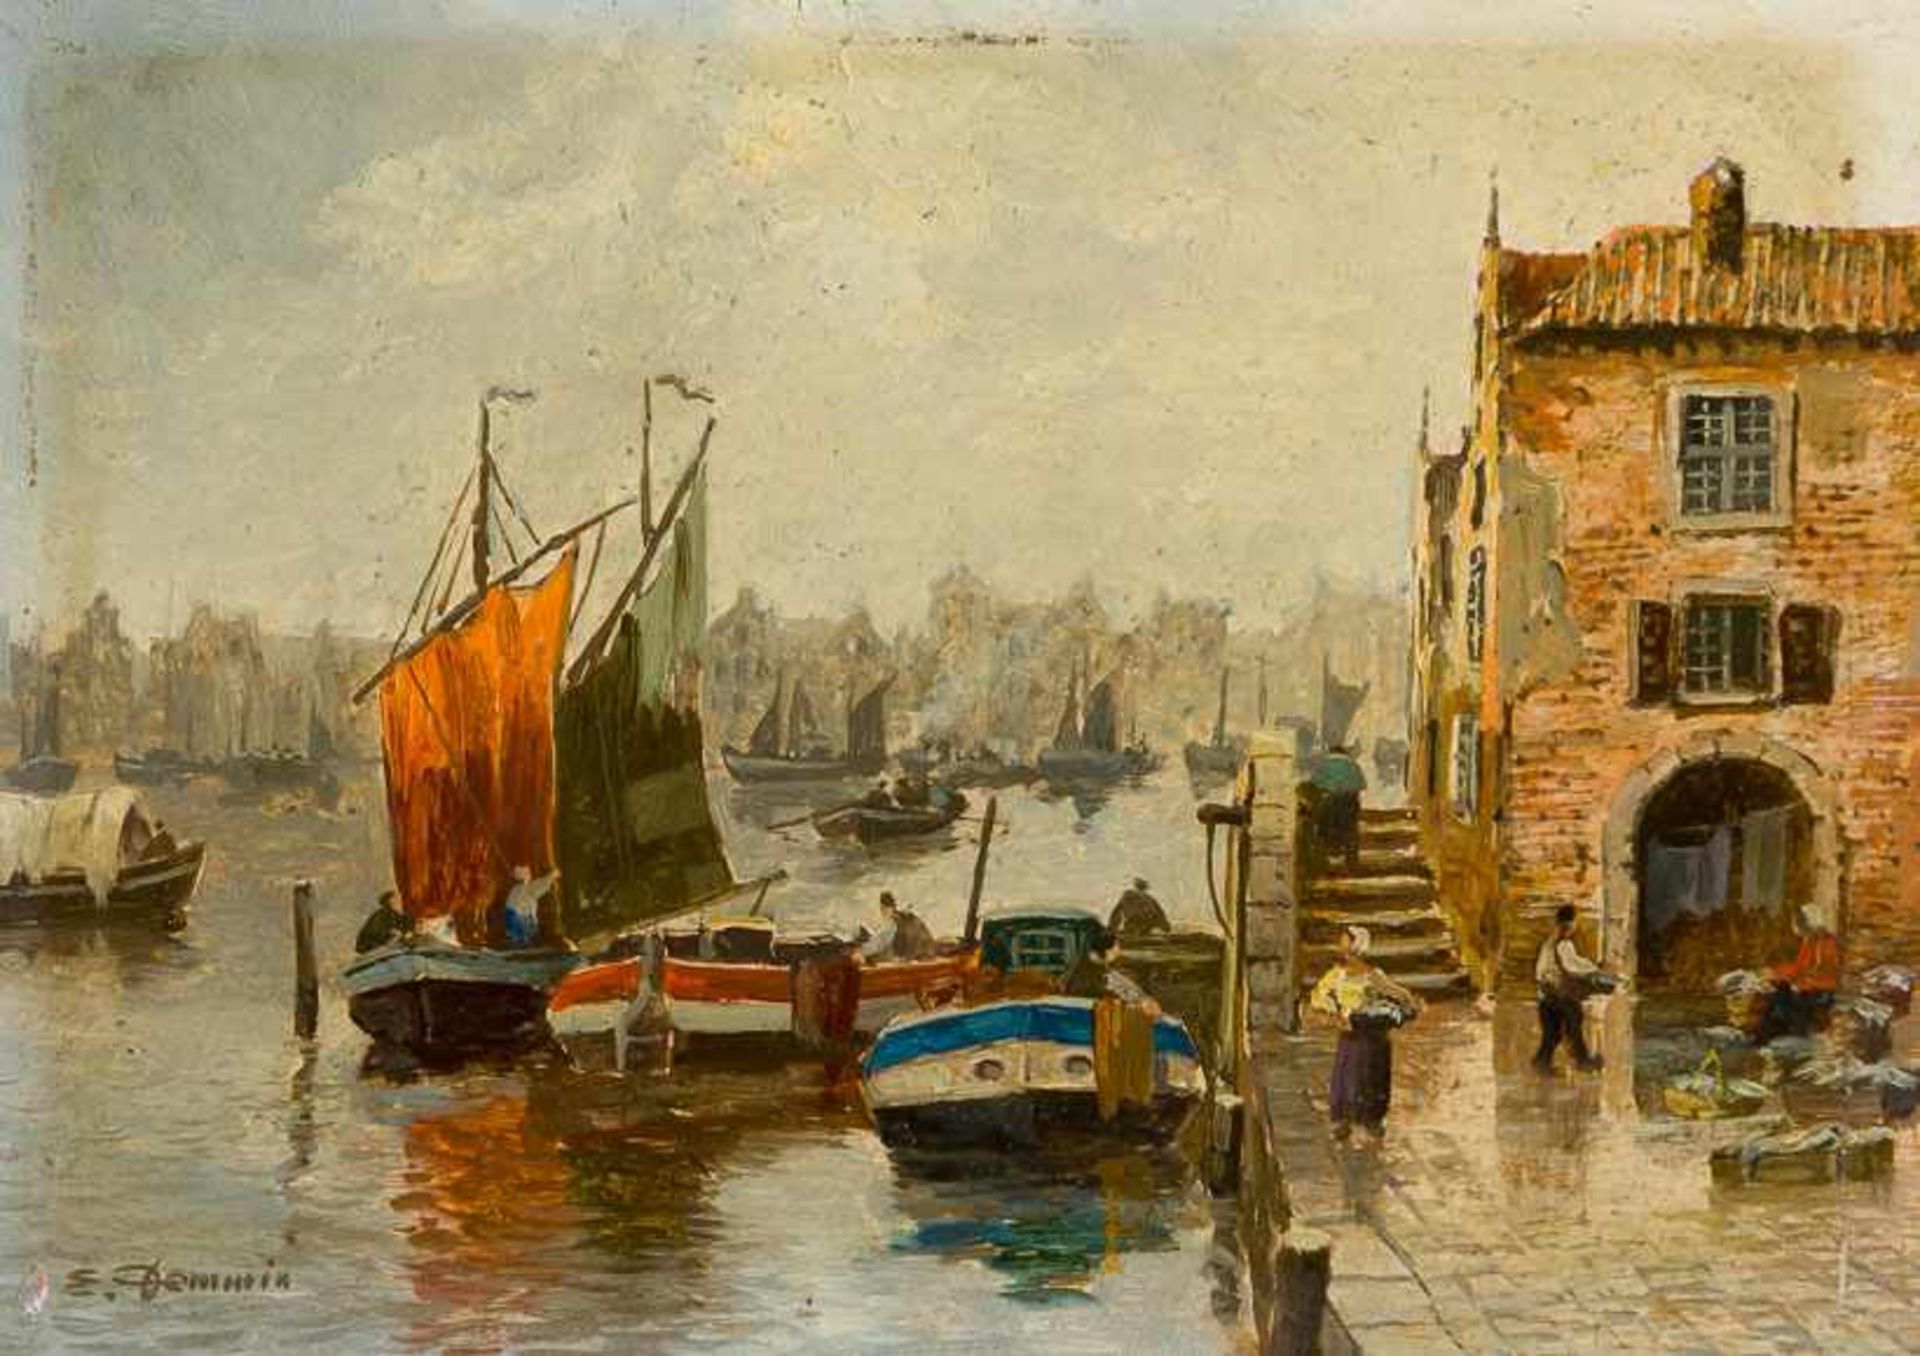 Derselbe Gracht in Amsterdam mit zahlreichen Lastkähnen und Segelbooten. Sign. Kupfer. 13×19 cm.